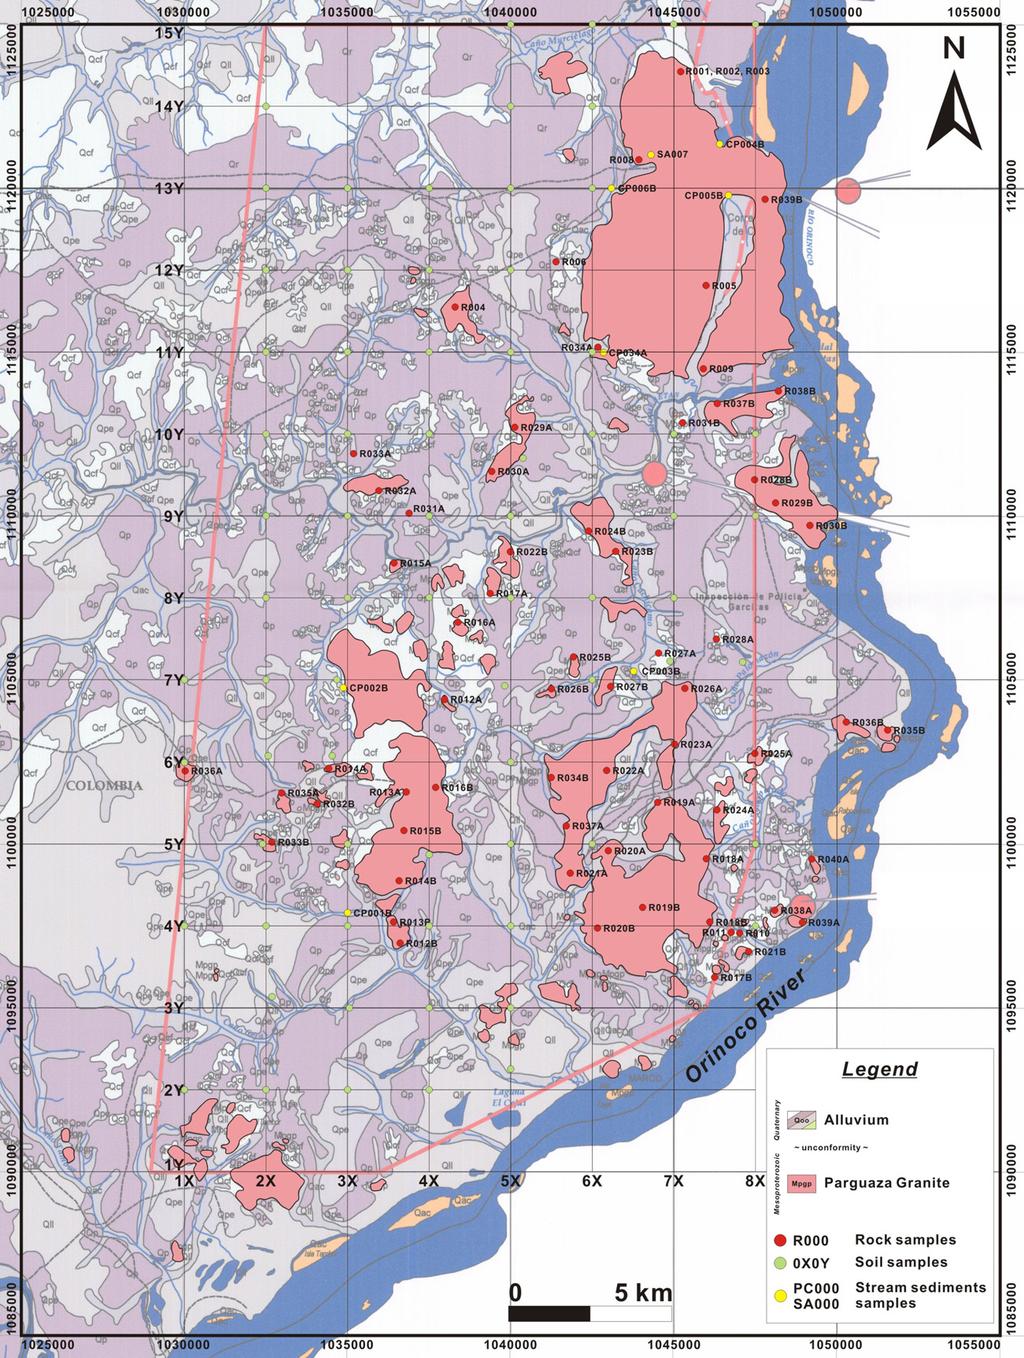 콜롬비아 동부 비차다(Vichada) 지역의 지질구조 발달사 및 제3기 화성암류로 구성된다(Koh et al., 2011).